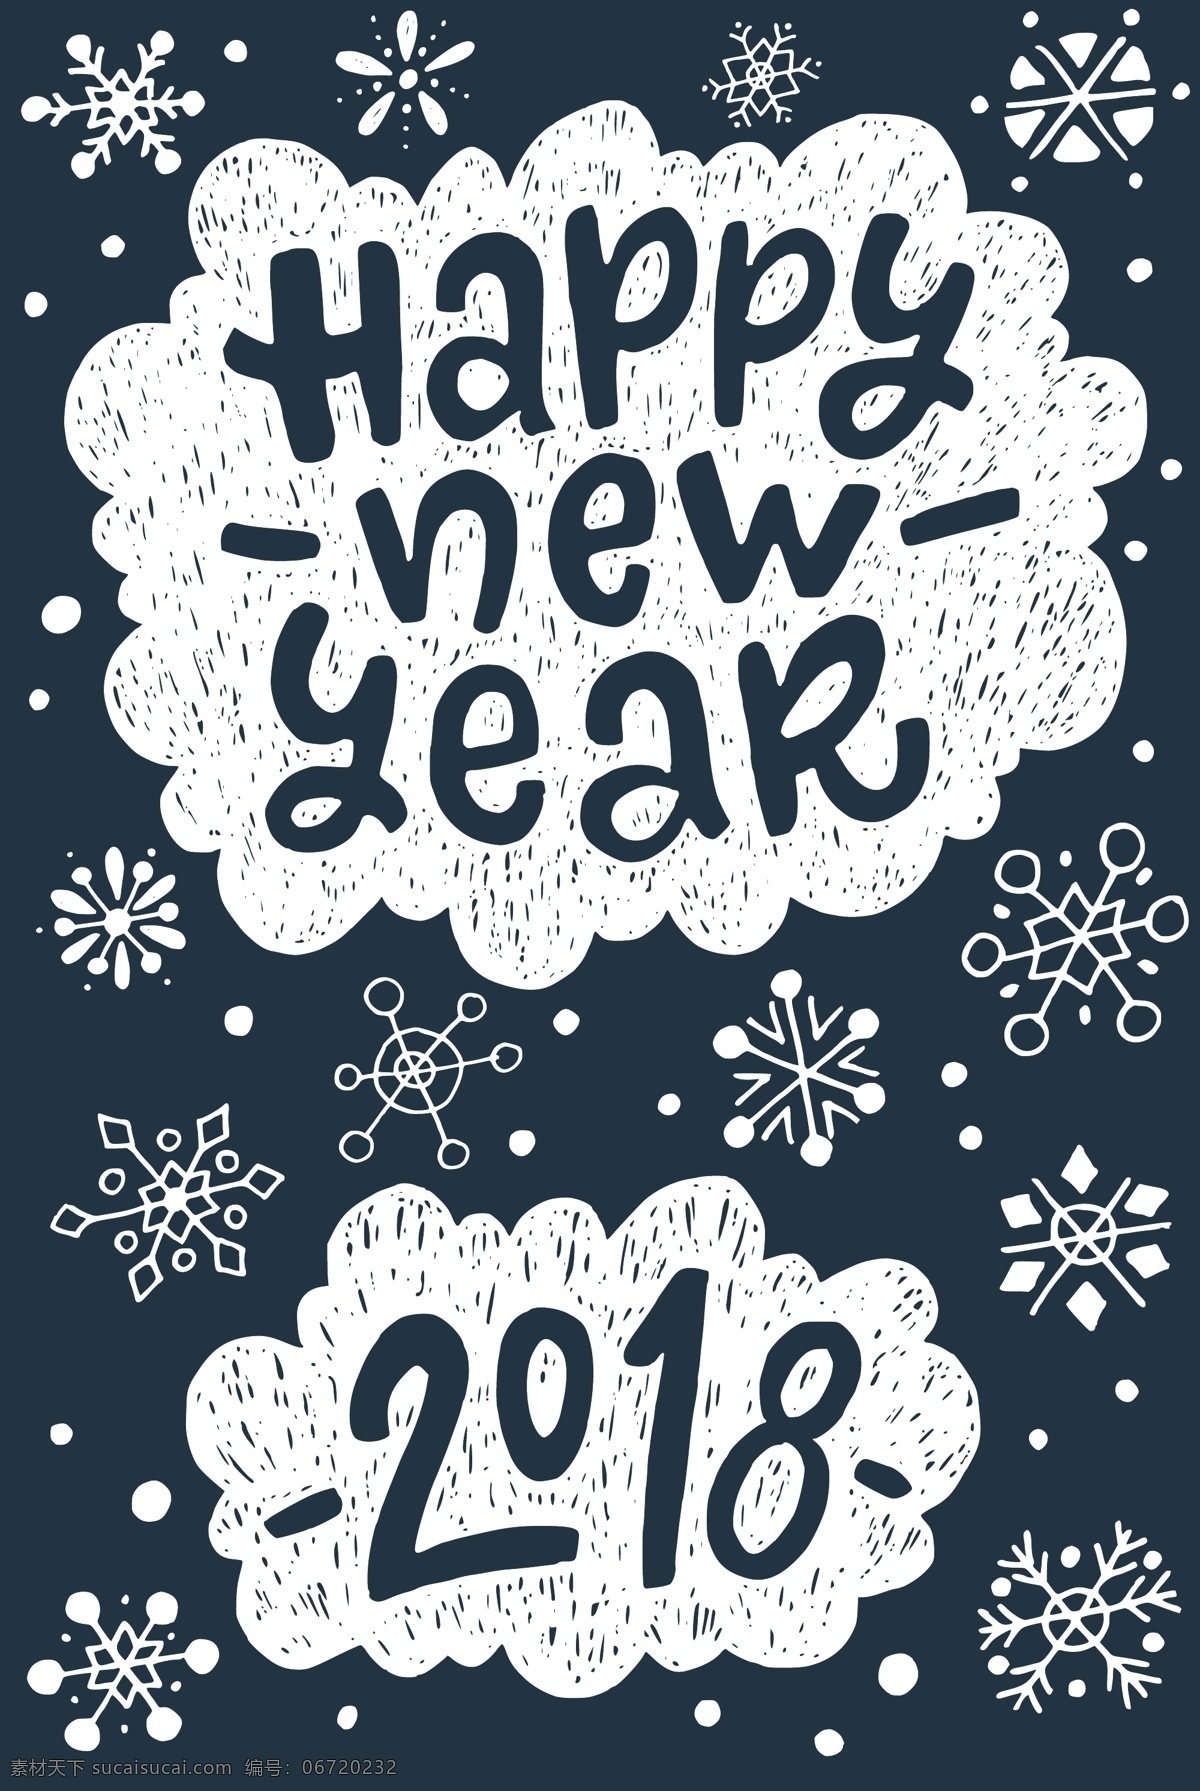 灰 蓝色 手绘 2018 新年 快乐 卡片 矢量 白色 平面素材 设计素材 矢量素材 数字 雪花 英文